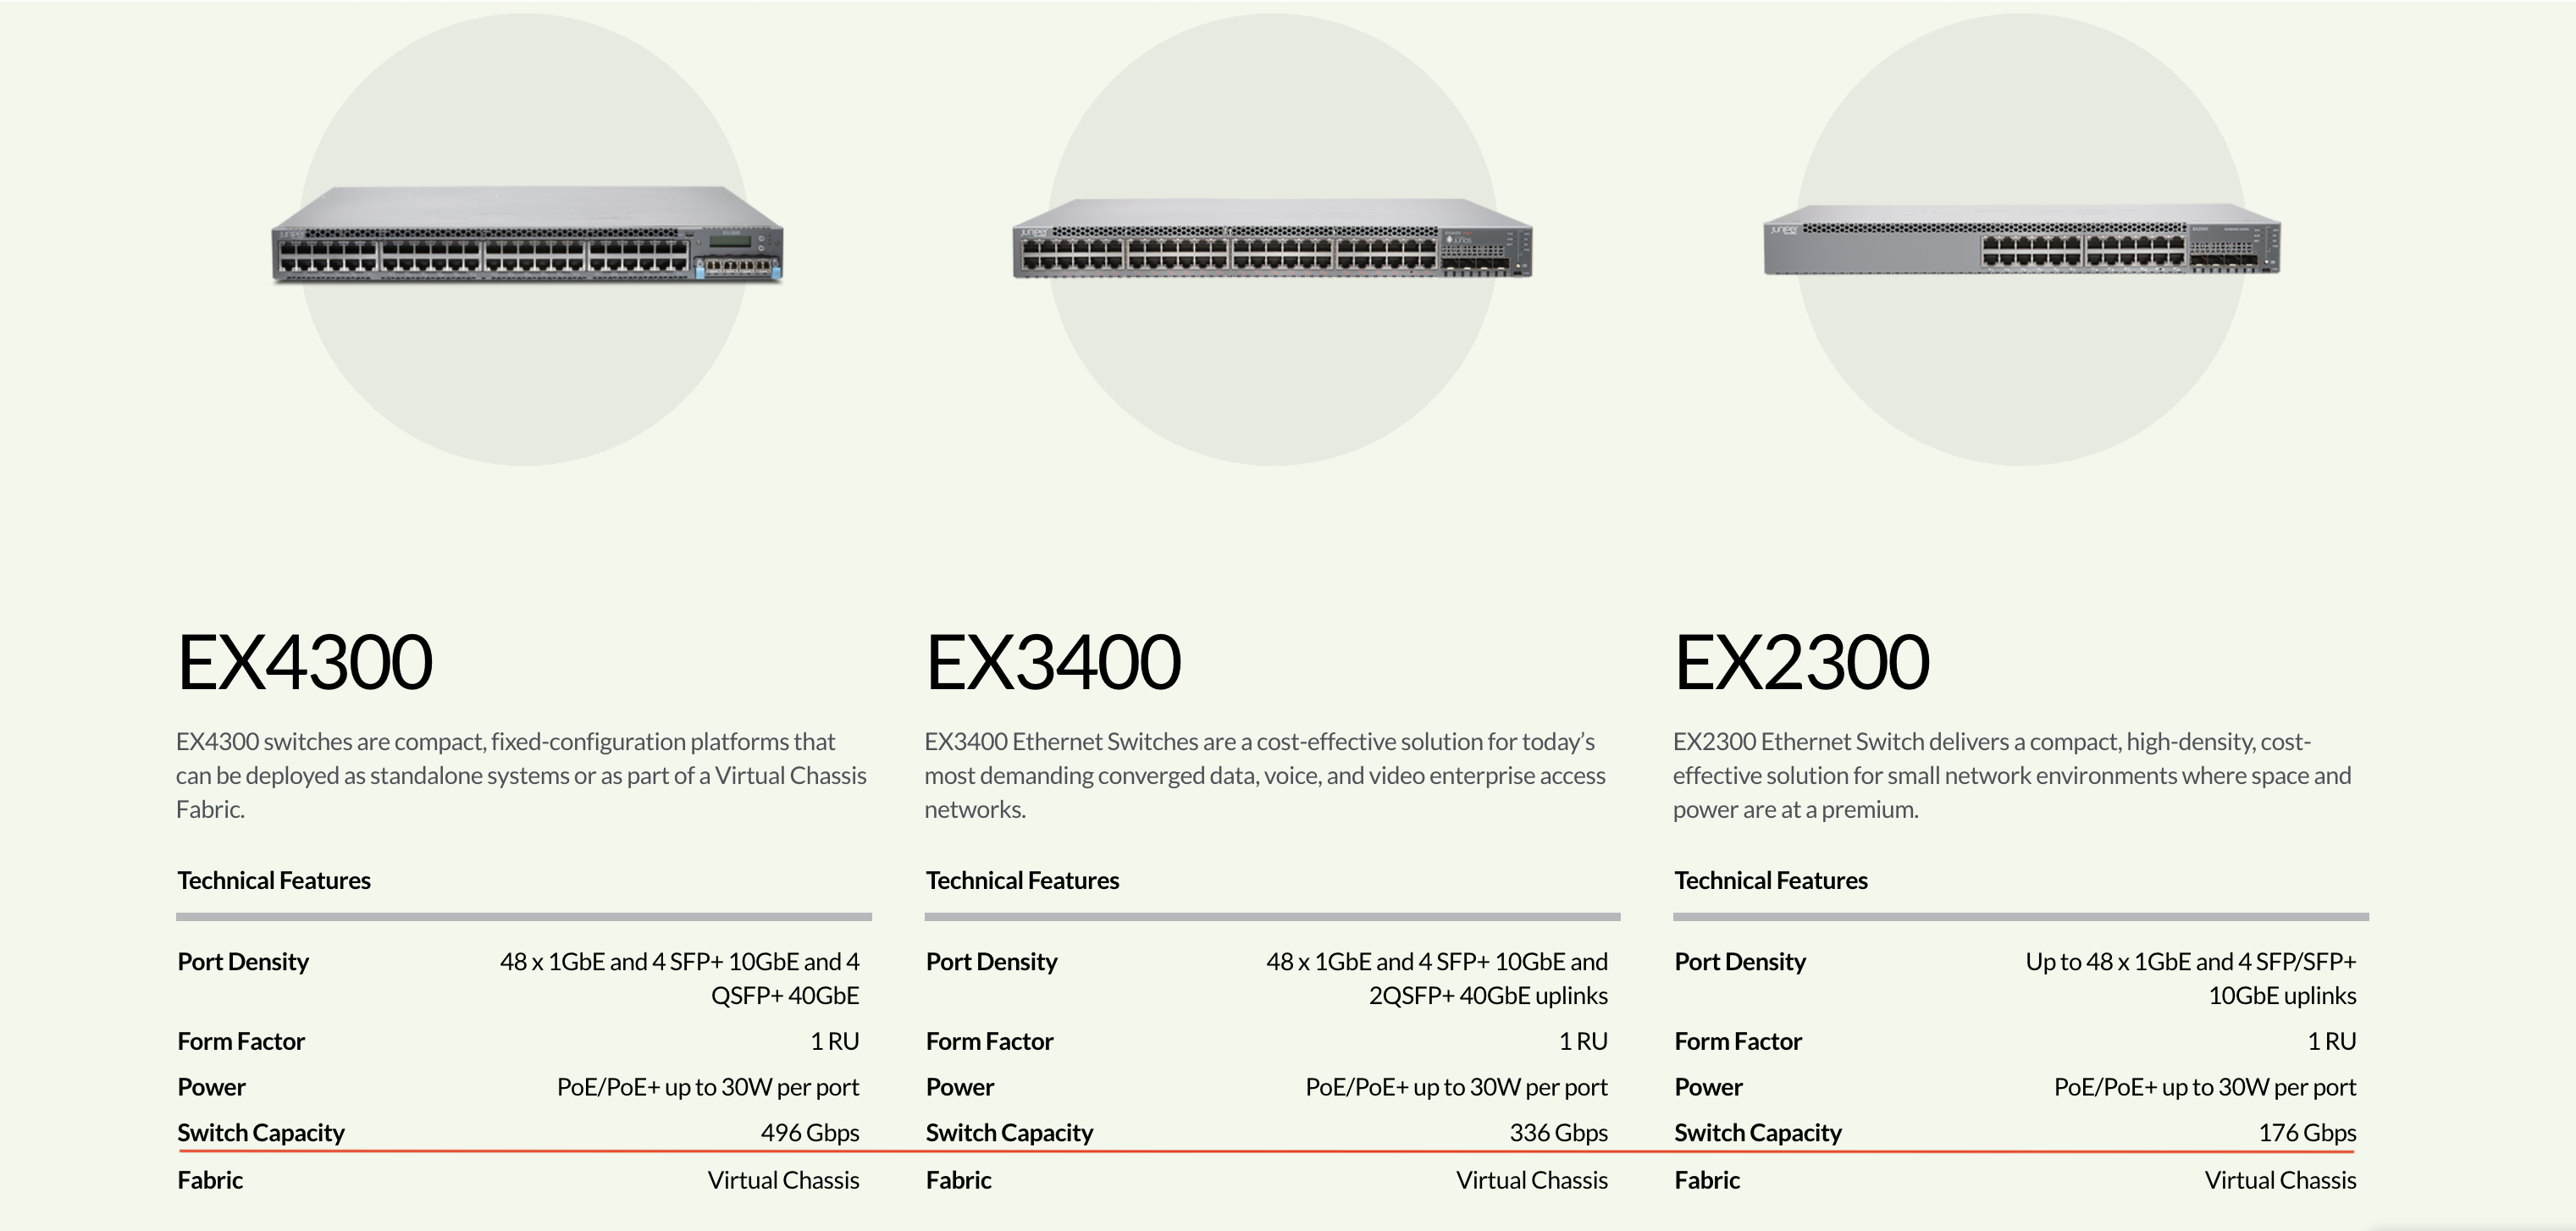 Juniper EX4300-24P、Juniper EX4300-24P-S、Juniper EX4300-24P-TAA、Juniper EX4300-24T、Juniper EX4300-24T-S、Juniper EX4300-24T-TAA、Juniper EX4300-32F、Juniper EX4300-32F-DC、Juniper EX4300-32F-DC-TAA、Juniper EX4300-32F-EFL、Juniper EX4300-32F-S、Juniper EX4300-32F-TAA、Juniper EX4300-48MP、Juniper EX4300-48MP-FAN、Juniper EX4300-48MP-S、Juniper EX4300-48MP-TAA、Juniper EX4300-48P、Juniper EX4300-48P-S、Juniper EX4300-48P-TAA、Juniper EX4300-48T、Juniper EX4300-48T-AFI、Juniper EX4300-48T-AFI-TAA、Juniper EX4300-48T-DC、Juniper EX4300-48T-DC-AFI、Juniper EX4300-48T-DCI-TAA、Juniper EX4300-48T-DC-TAA、Juniper EX4300-48T-S、Juniper EX4300-48T-TAA